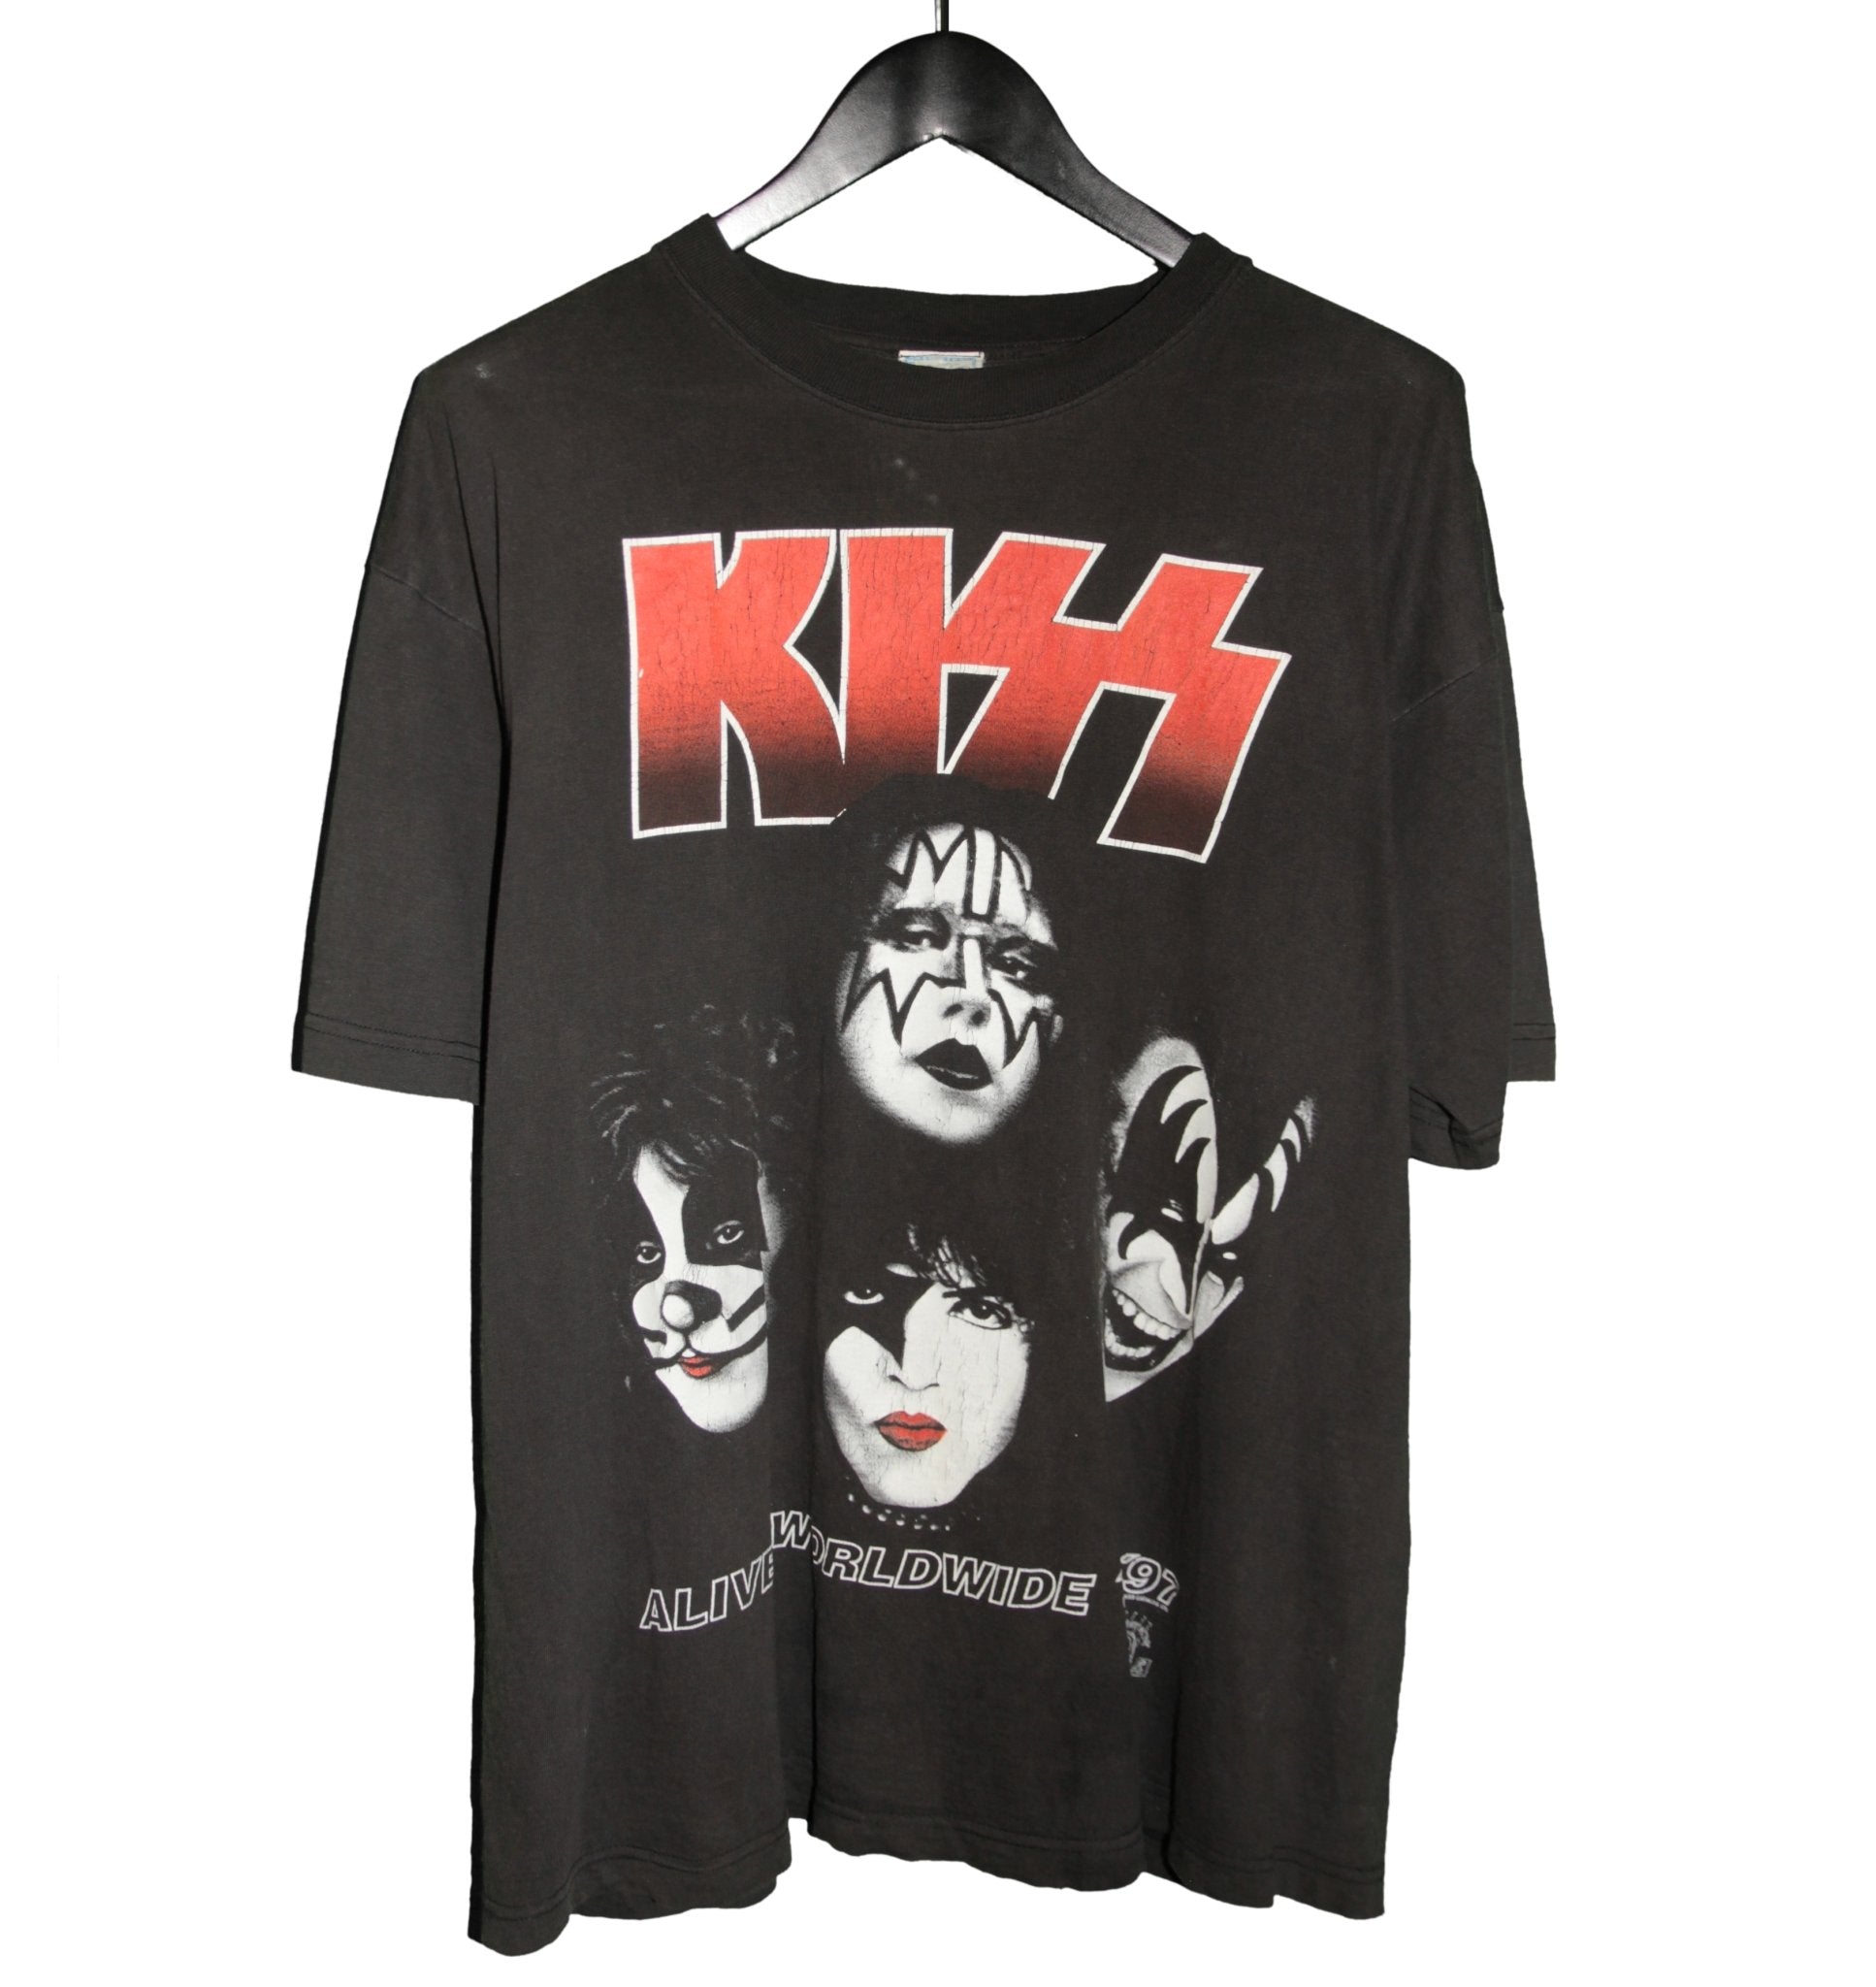 KISS 1996 Alive/Worldwide Tour Shirt - Faded AU